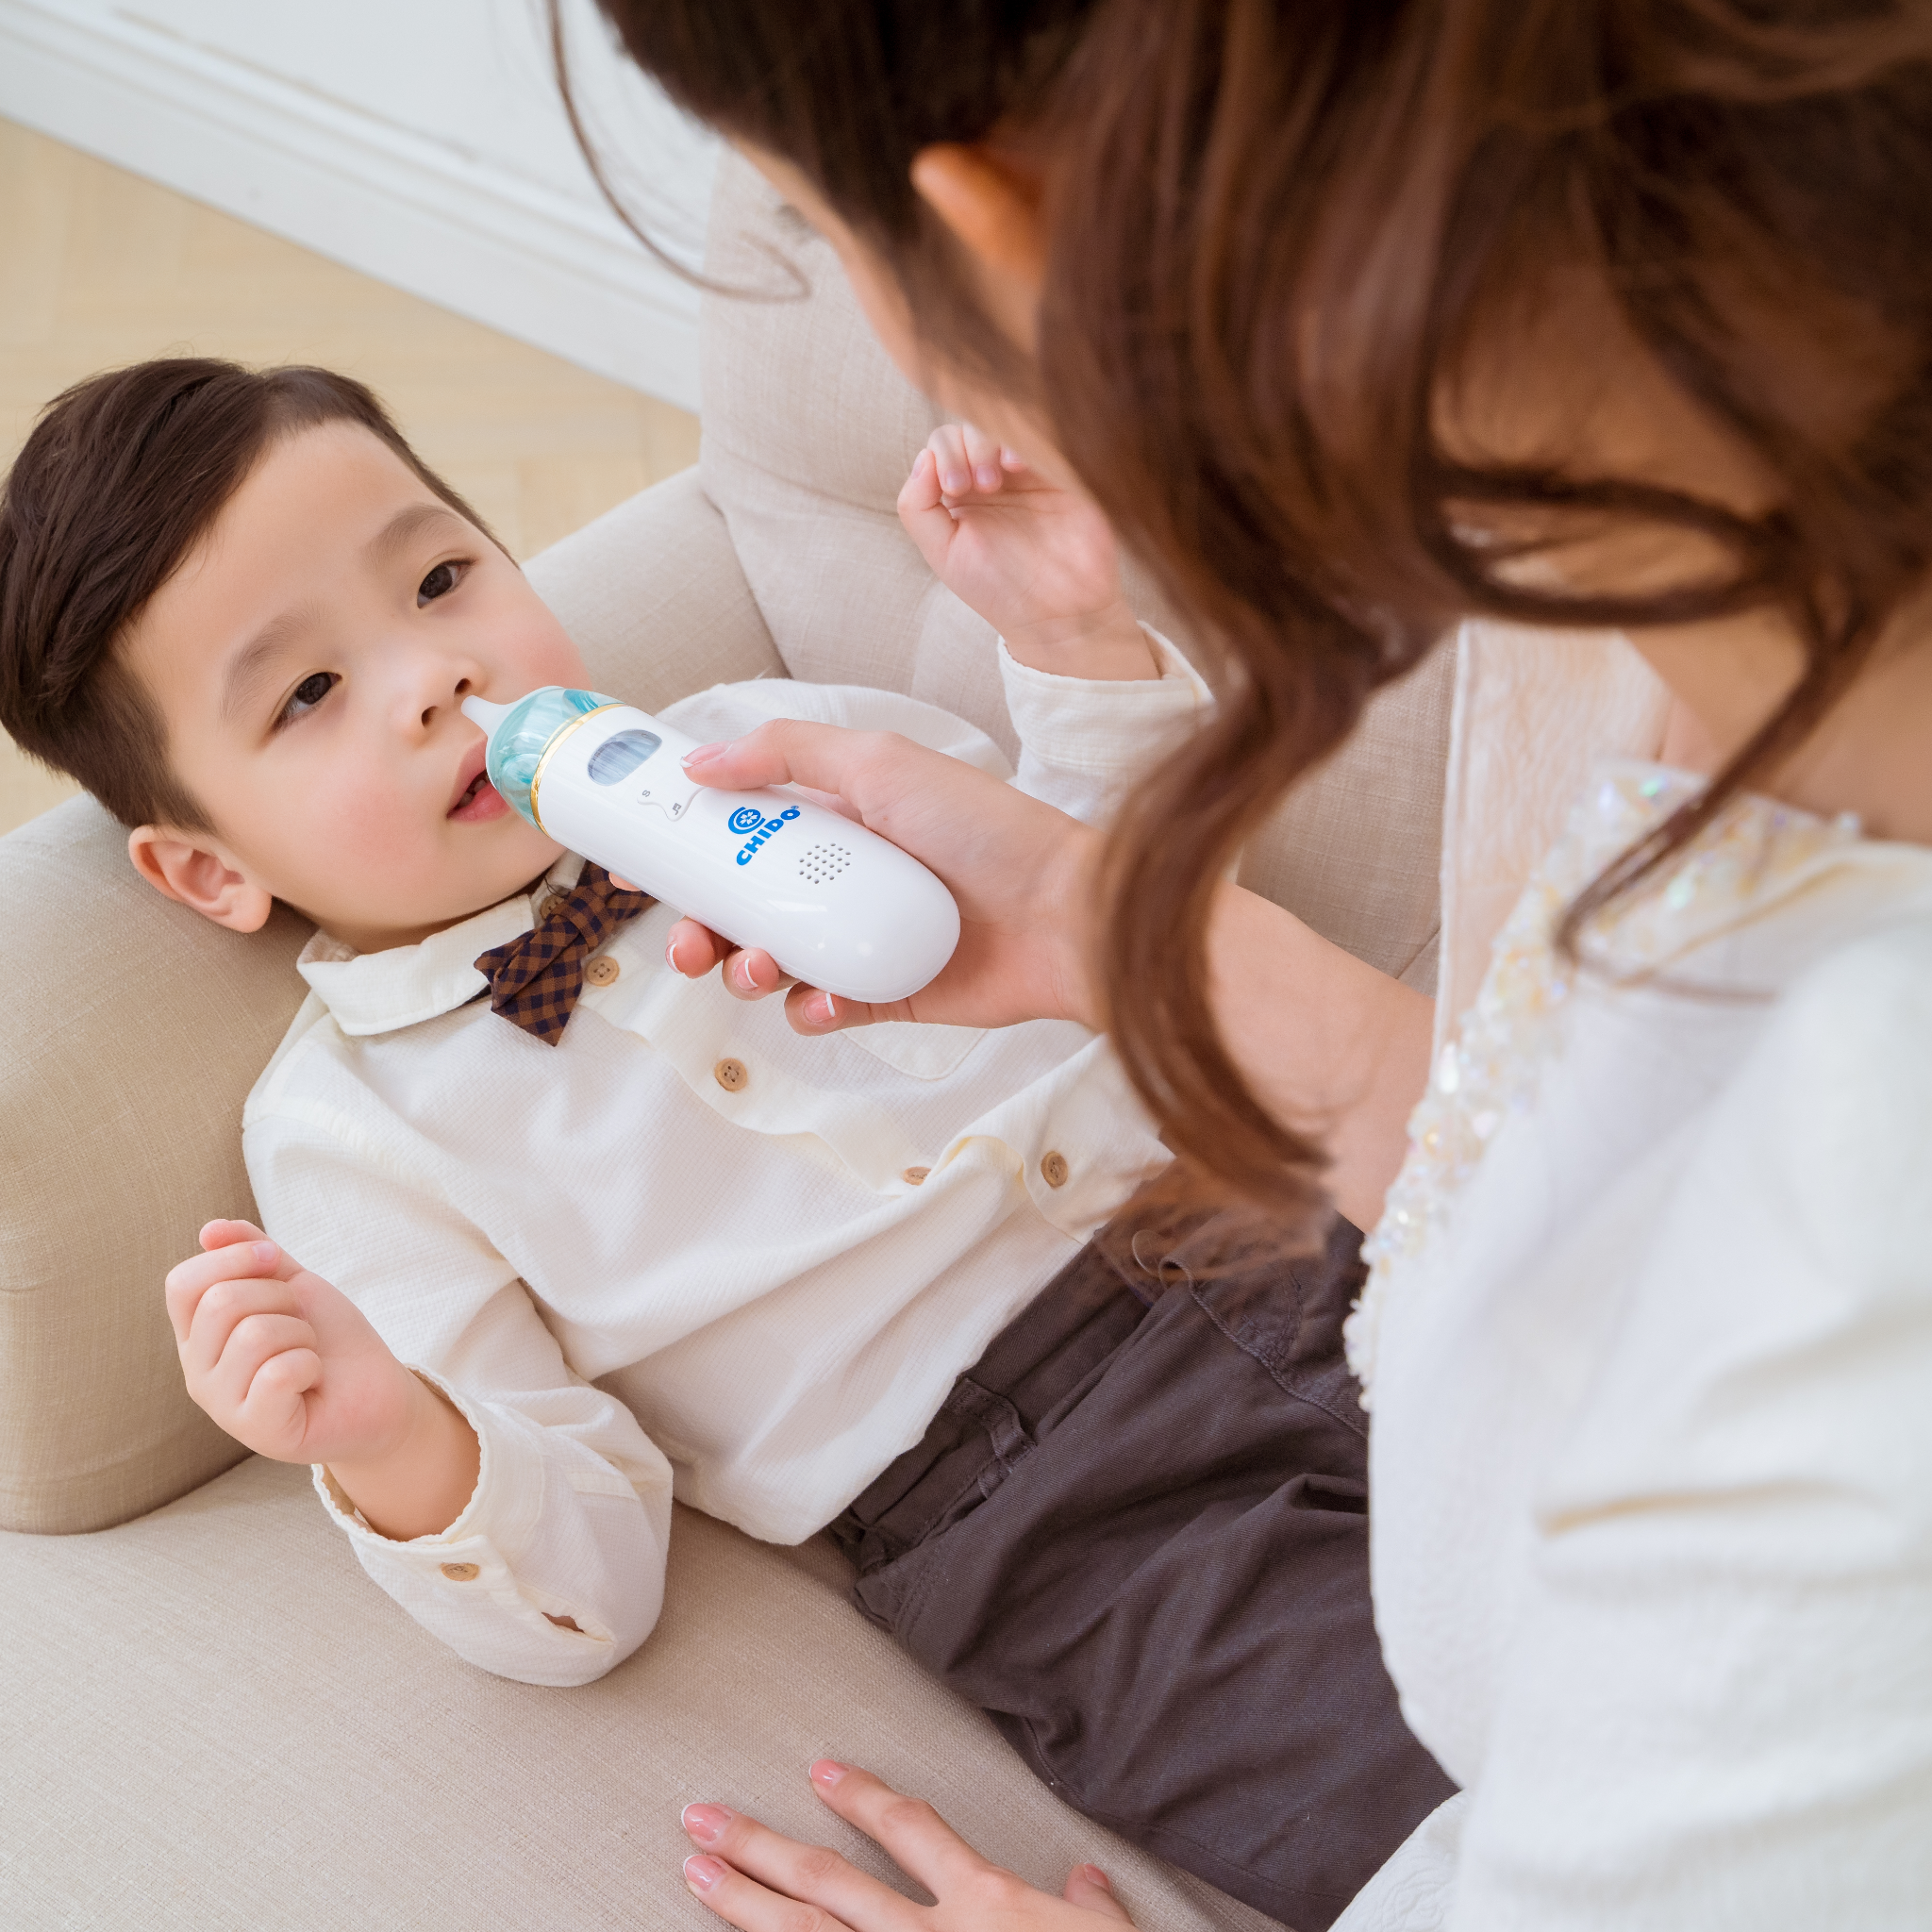 Máy hút mũi điện Chido chính hãng, dụng cụ hút dịch mũi dành cho bé từ 0-6 tuổi CN Nhật Bản.